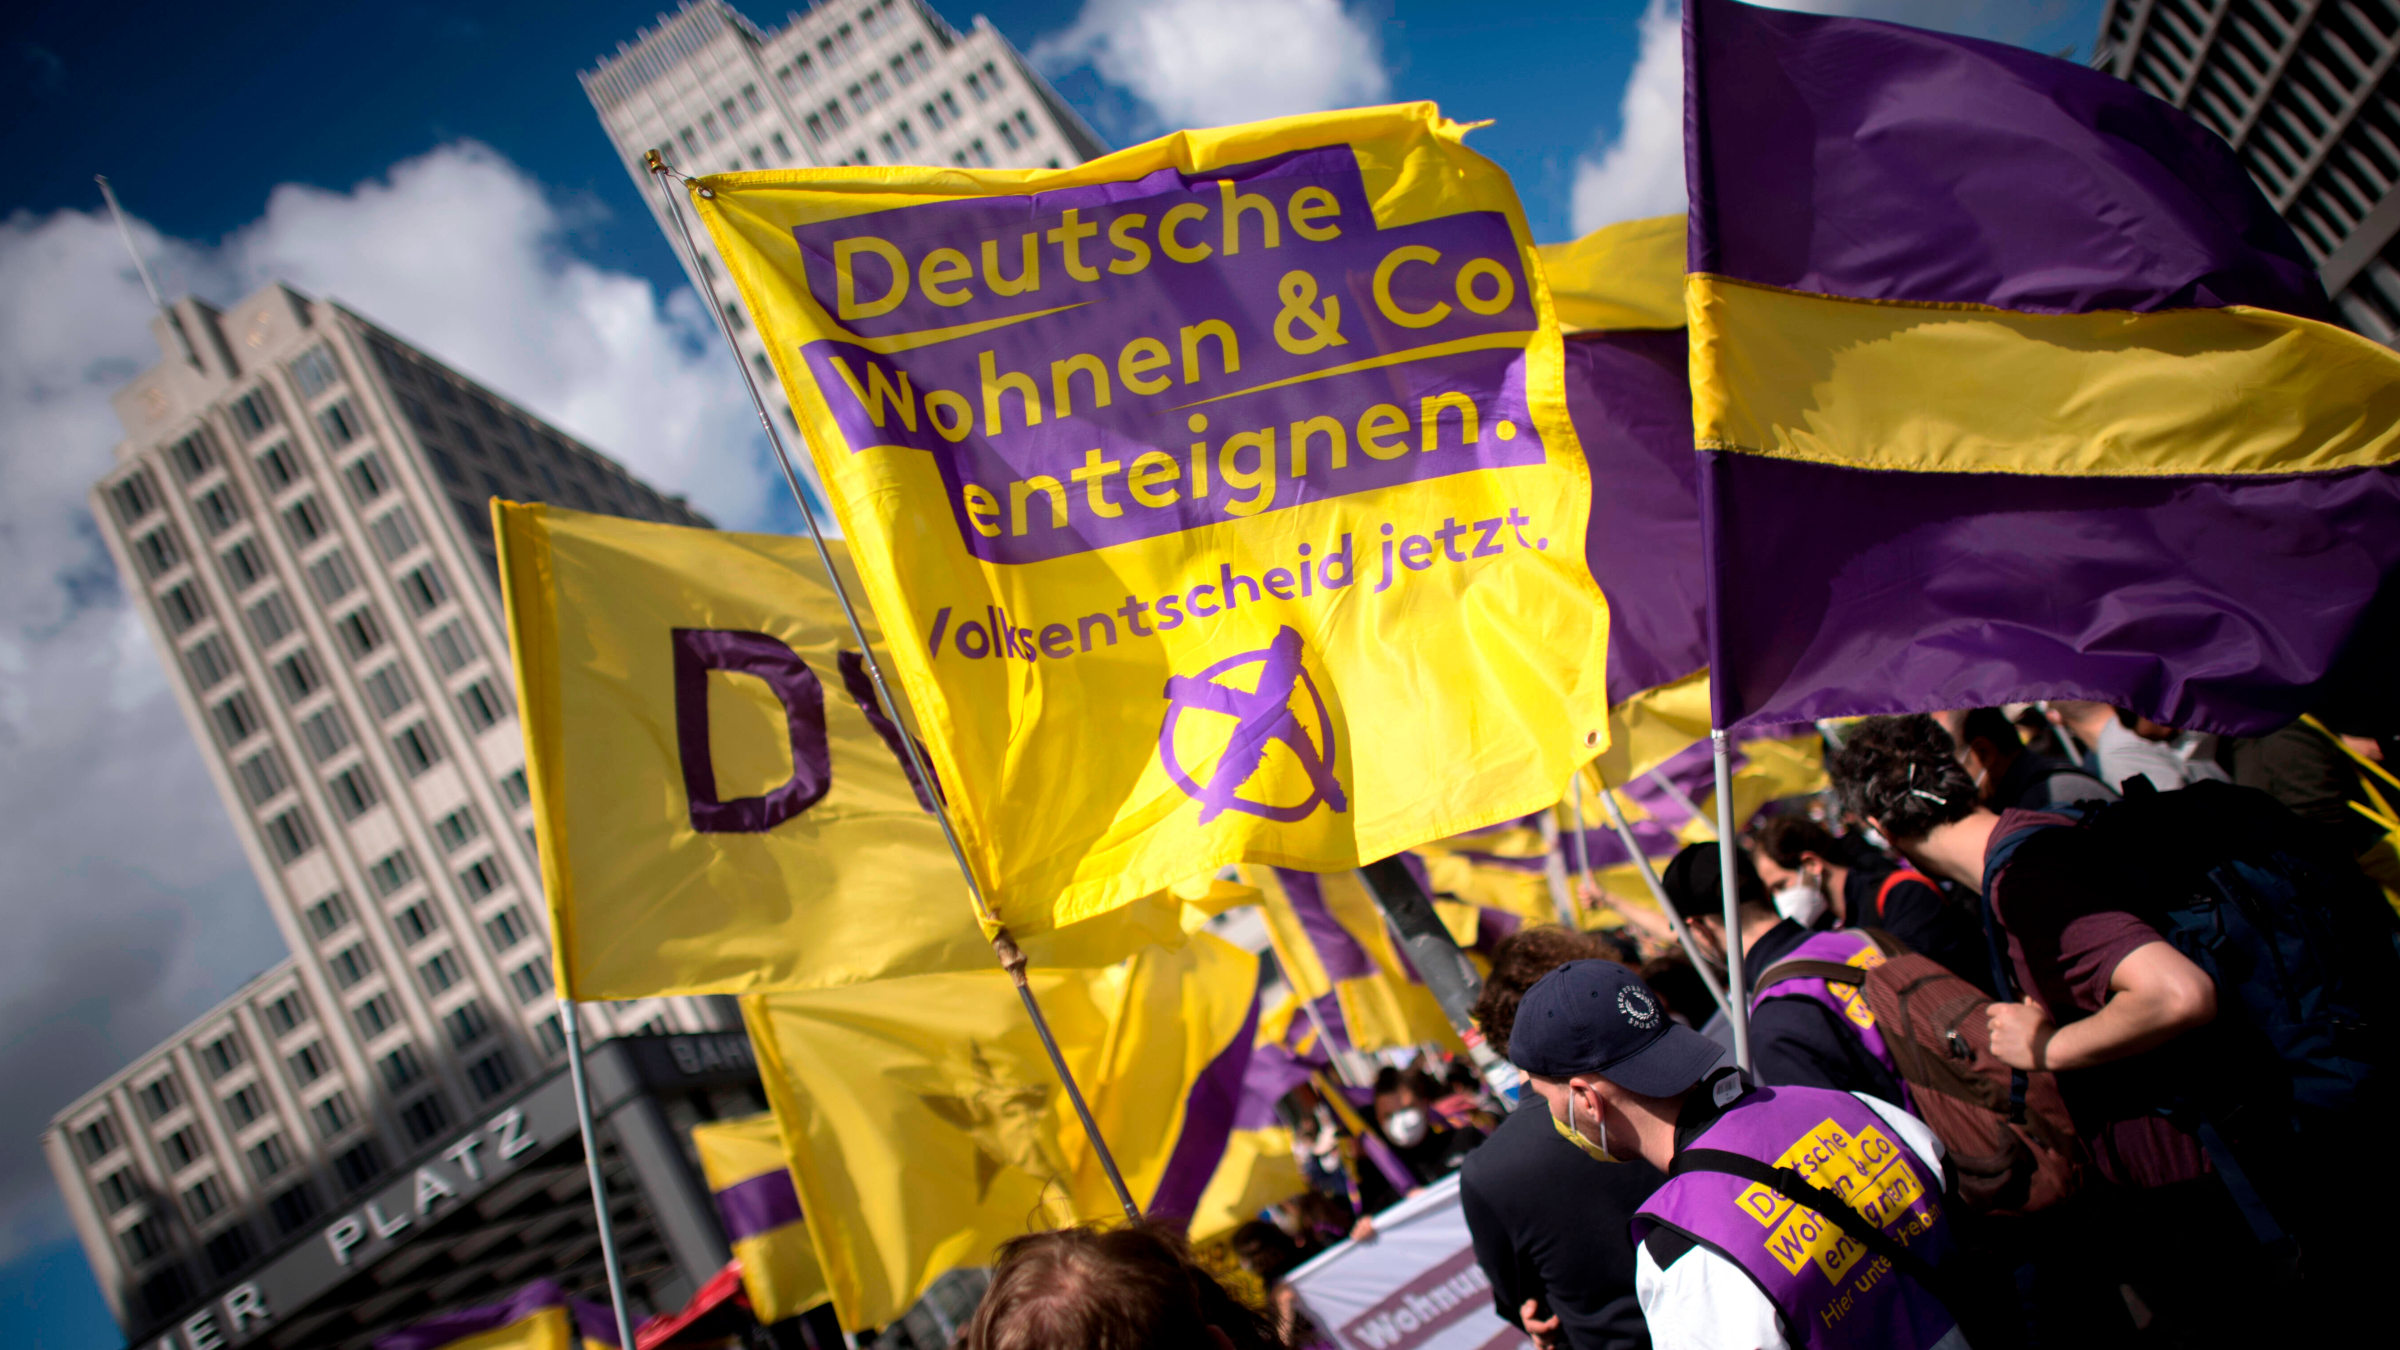 Demo von Deutsche Wohnen und Co enteignen – die Forderung des Volksentscheids 2021 muss endlich umgesetzt werden.